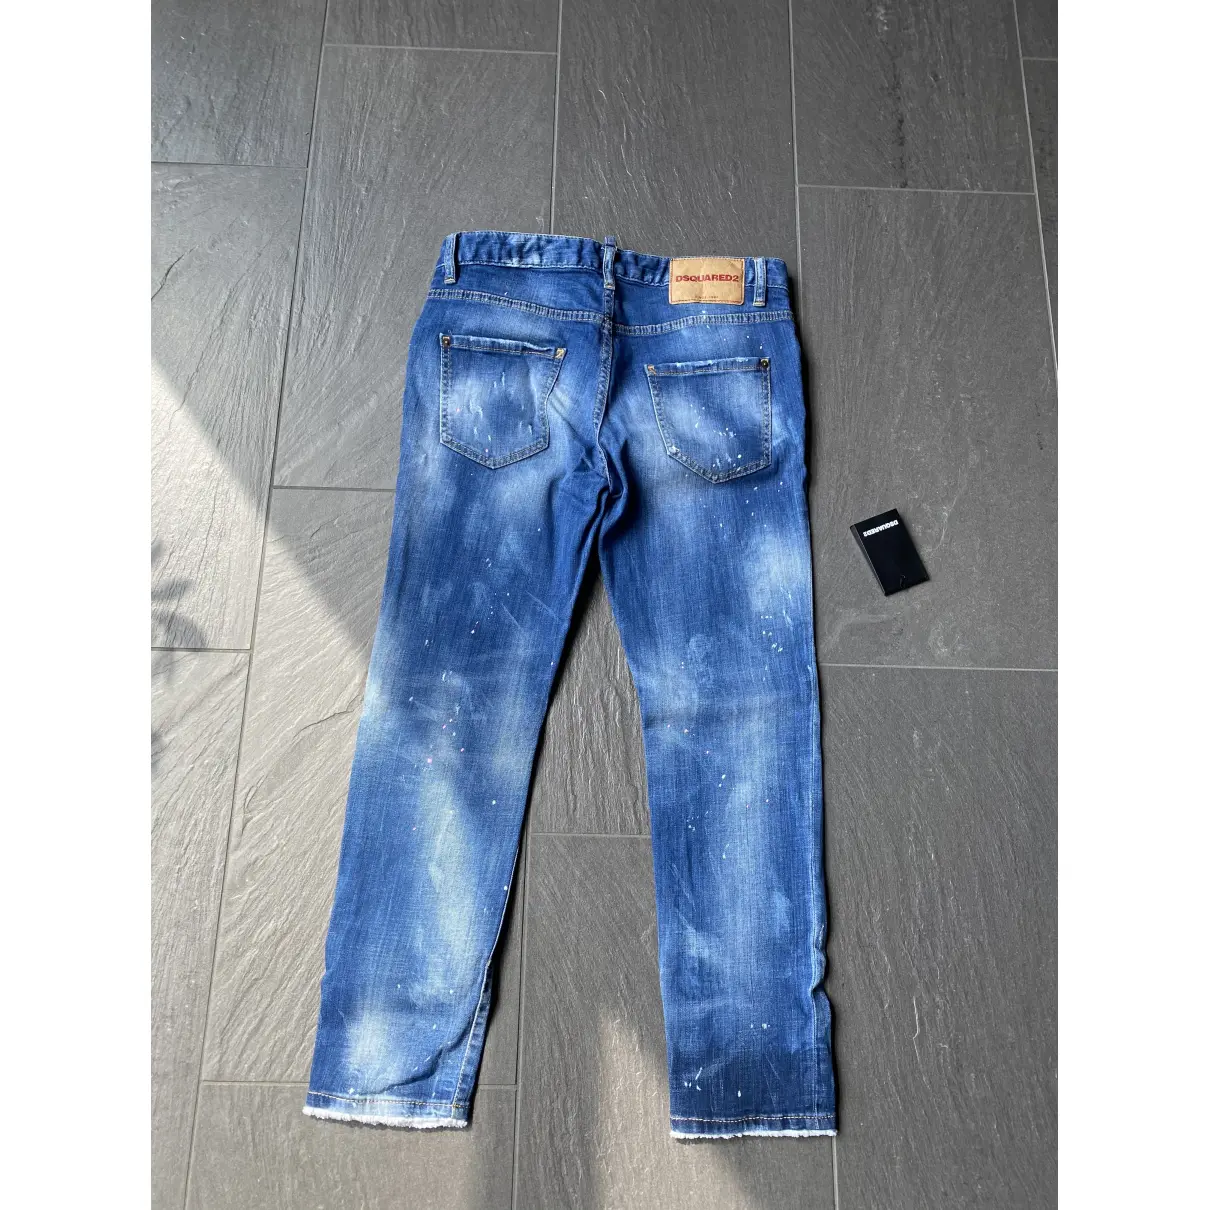 Buy Dsquared2 Boyfriend jeans online